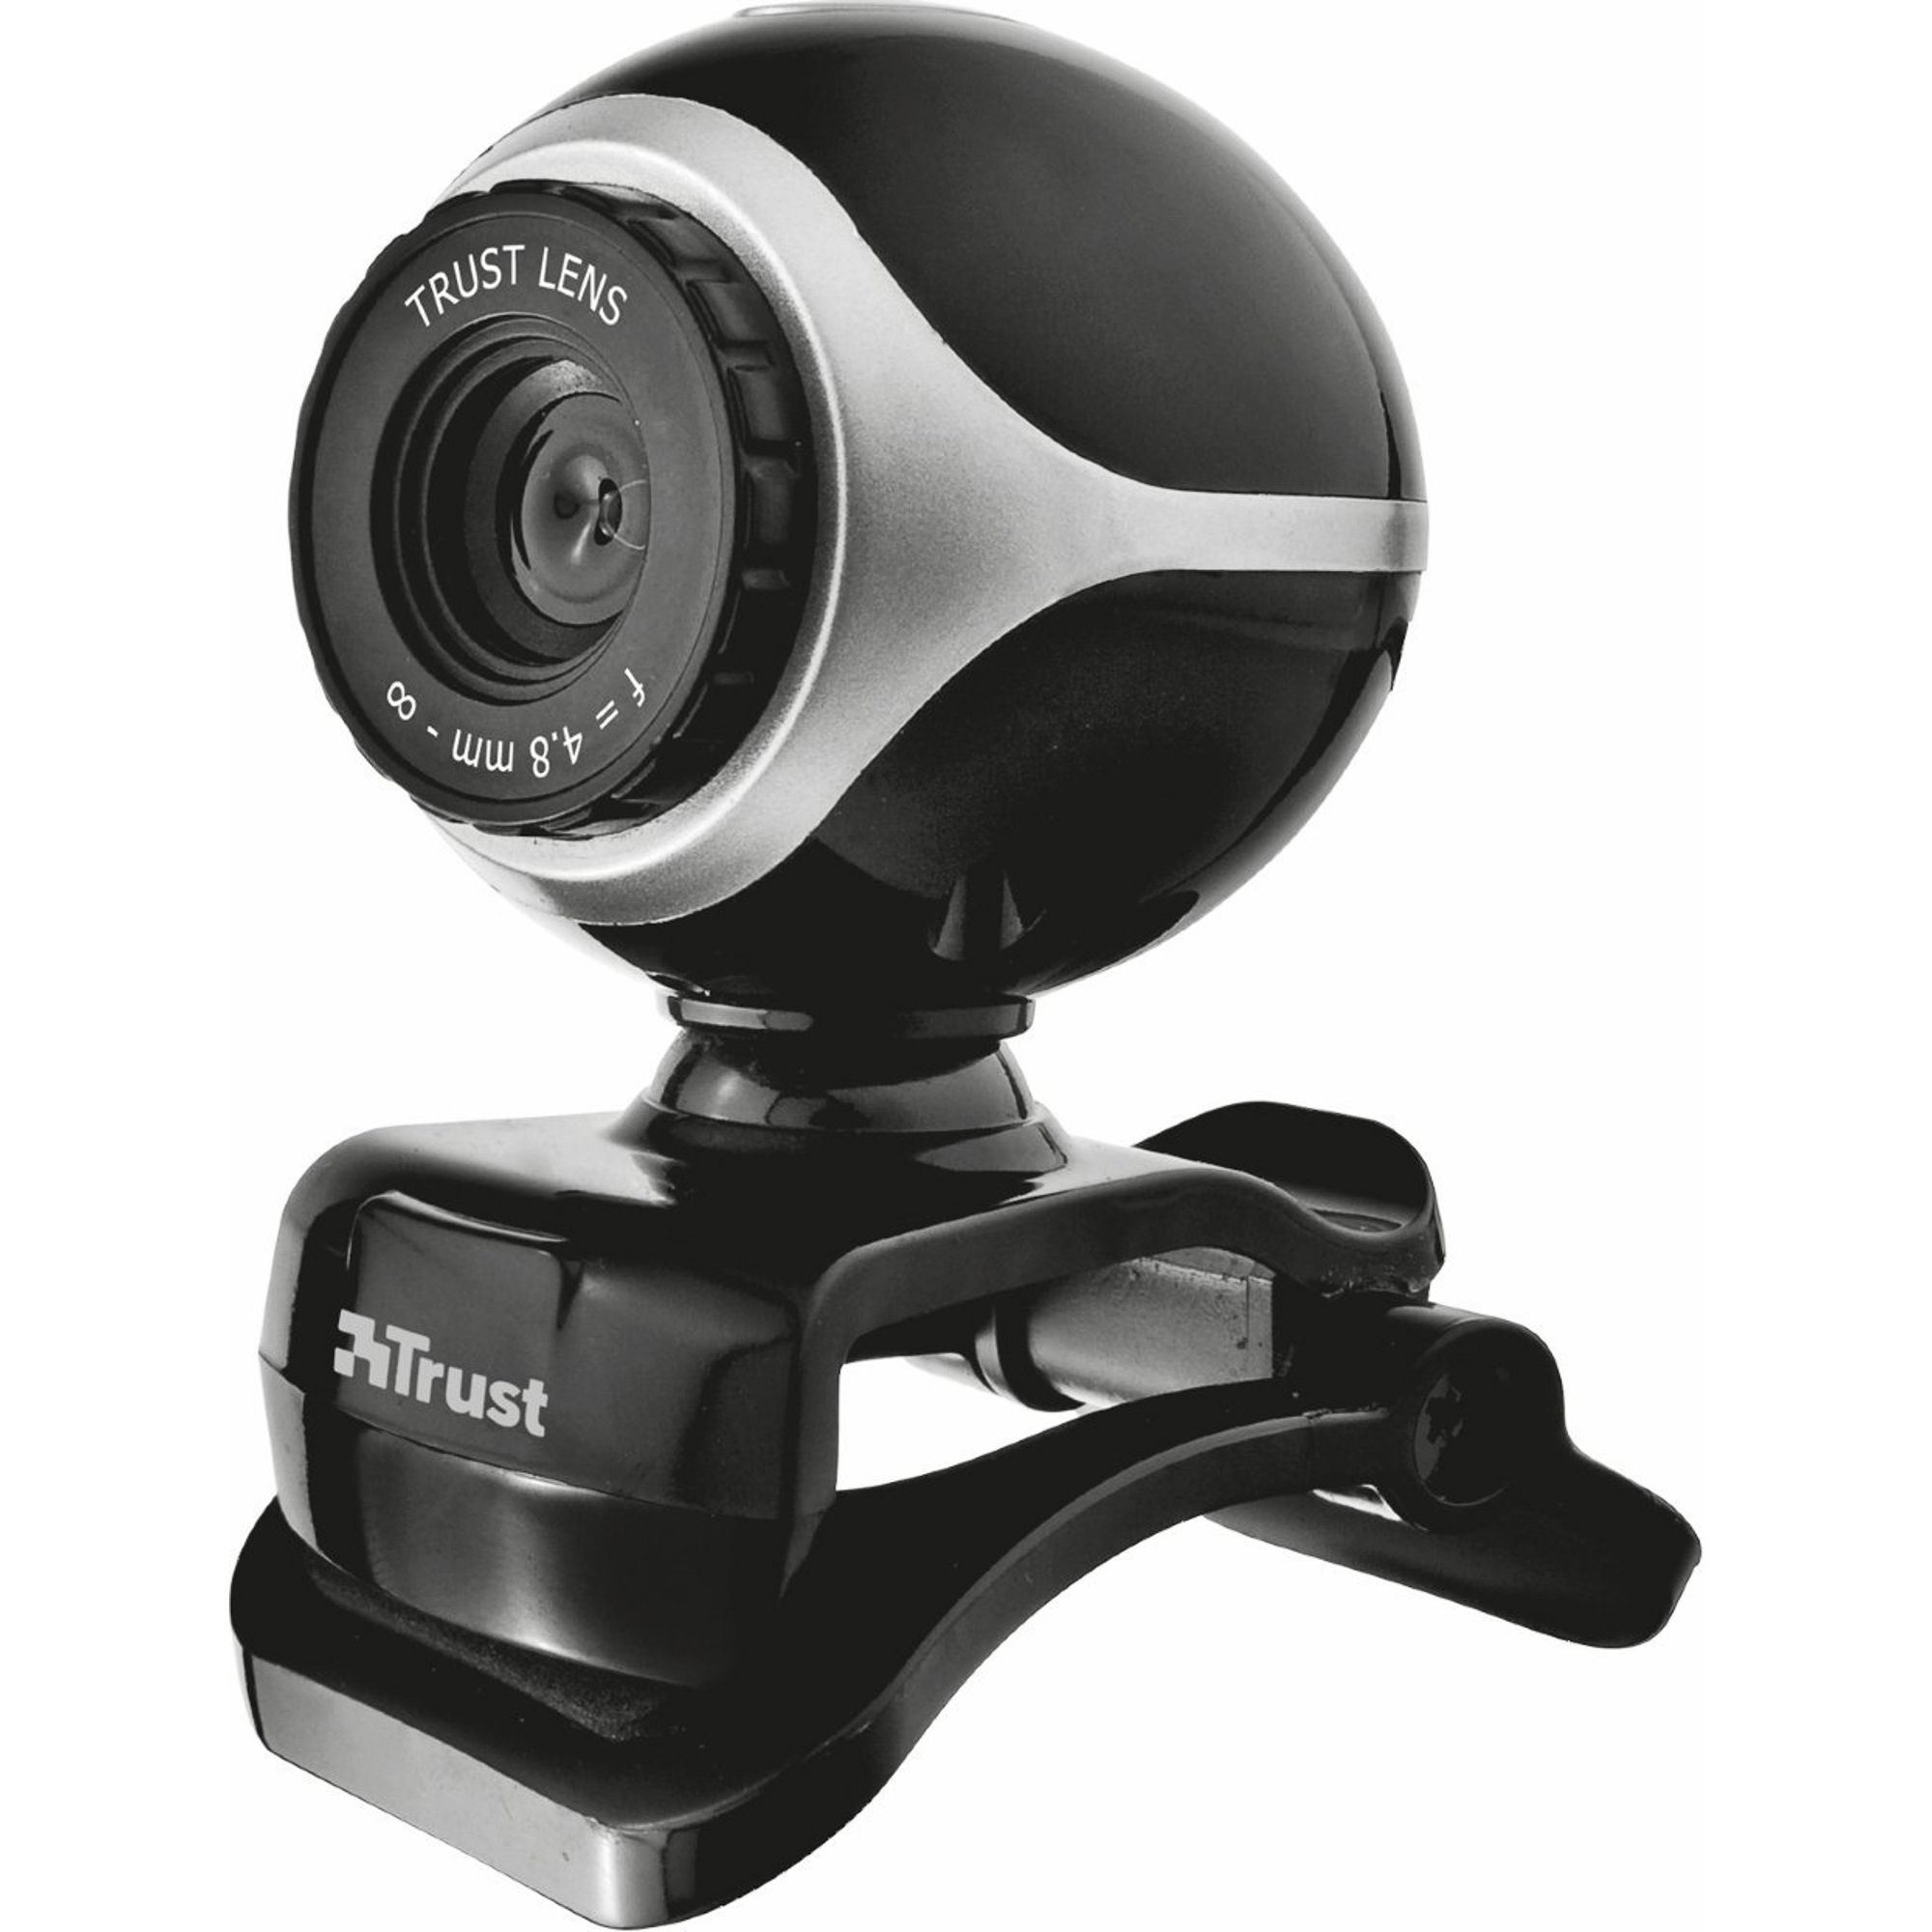 Купить веб камеру. Web-камера Trust Exis (17003). Web-камера Canyon CNE-cwc1. Веб-камера CBR CW 870fhd. Веб-камера Logitech c170.